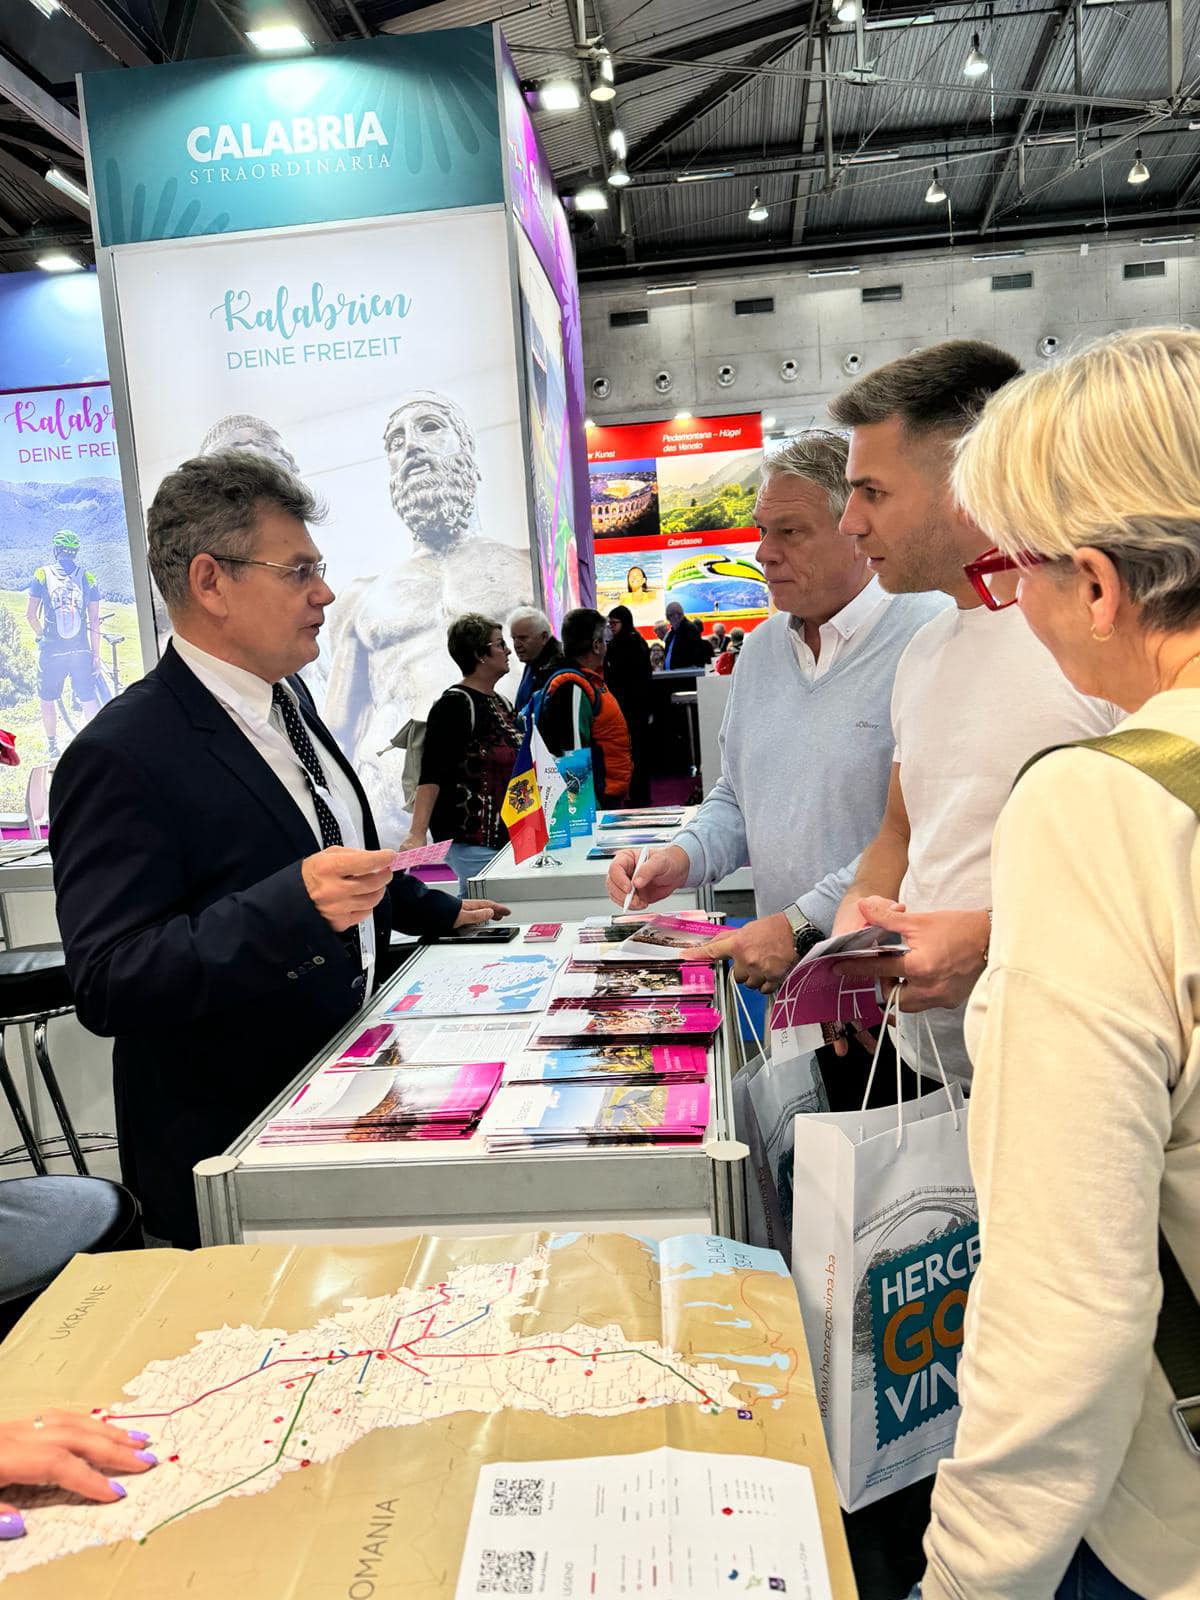 FOTO Moldova participă la o expoziție de turism în Austria, eveniment vizitat de peste 150 000 persoane